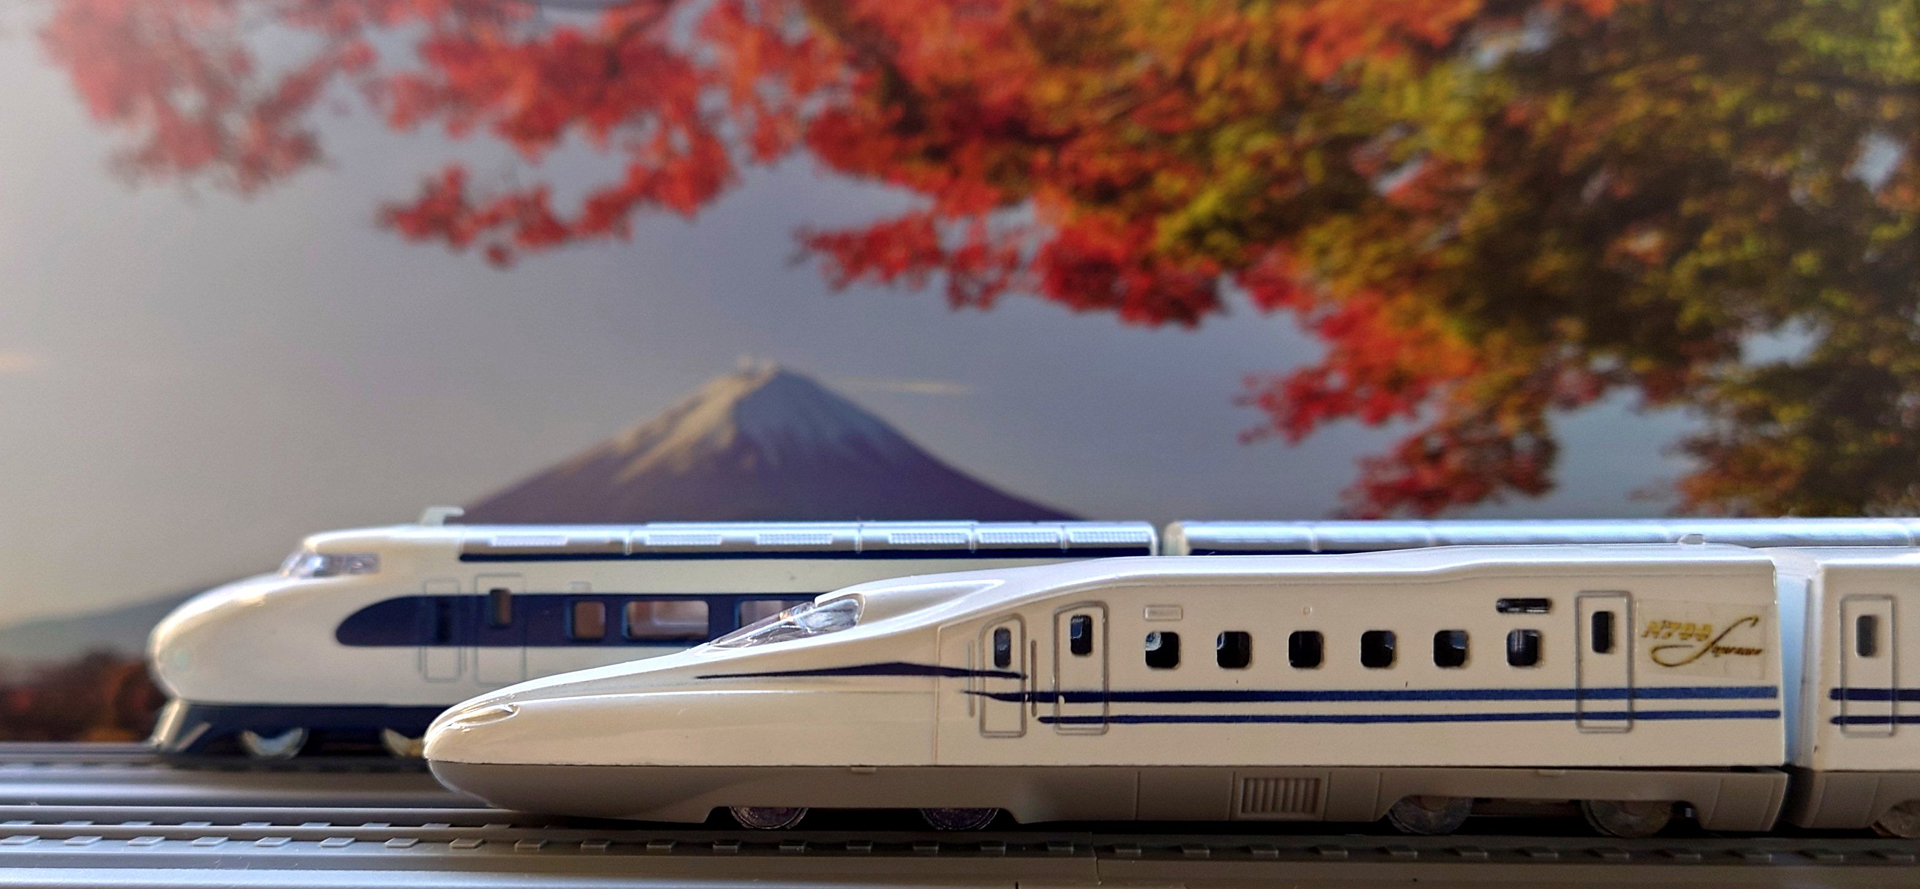 レビュー】Nゲージ鉄道模型「京商 リビングトレイン」シリーズレビュー 窓辺に新幹線があるとココロが落ち着く。小さくて大きな存在感 - HOBBY  Watch